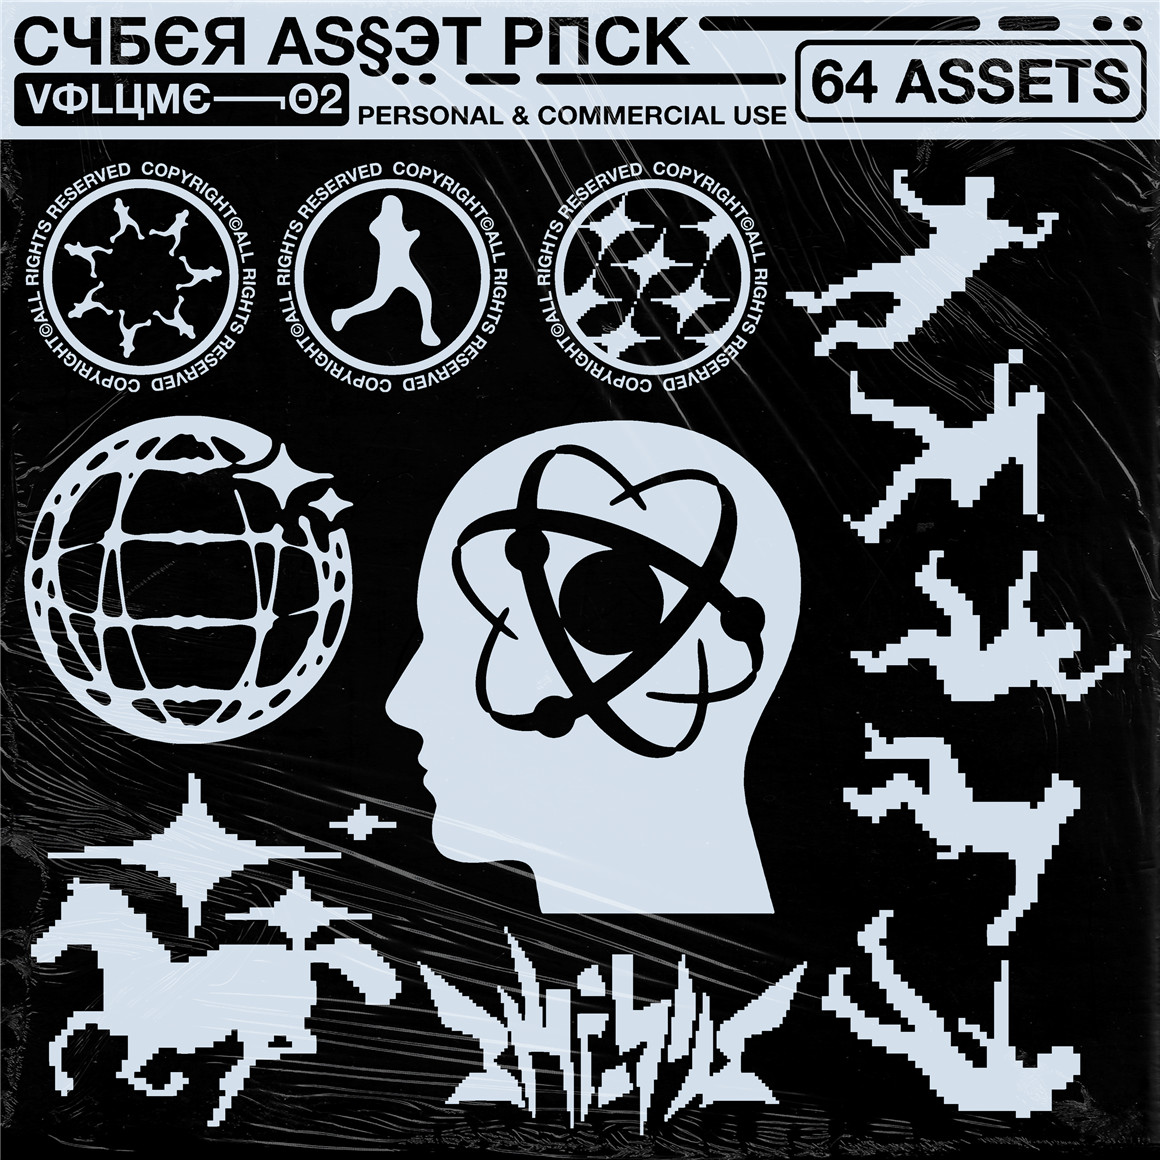 潮流嘻哈酸性赛博朋克服装印花图案logo徽标图标矢量图形设计素材 Cyber Icon Pack [Volume_02] 图标素材 第1张